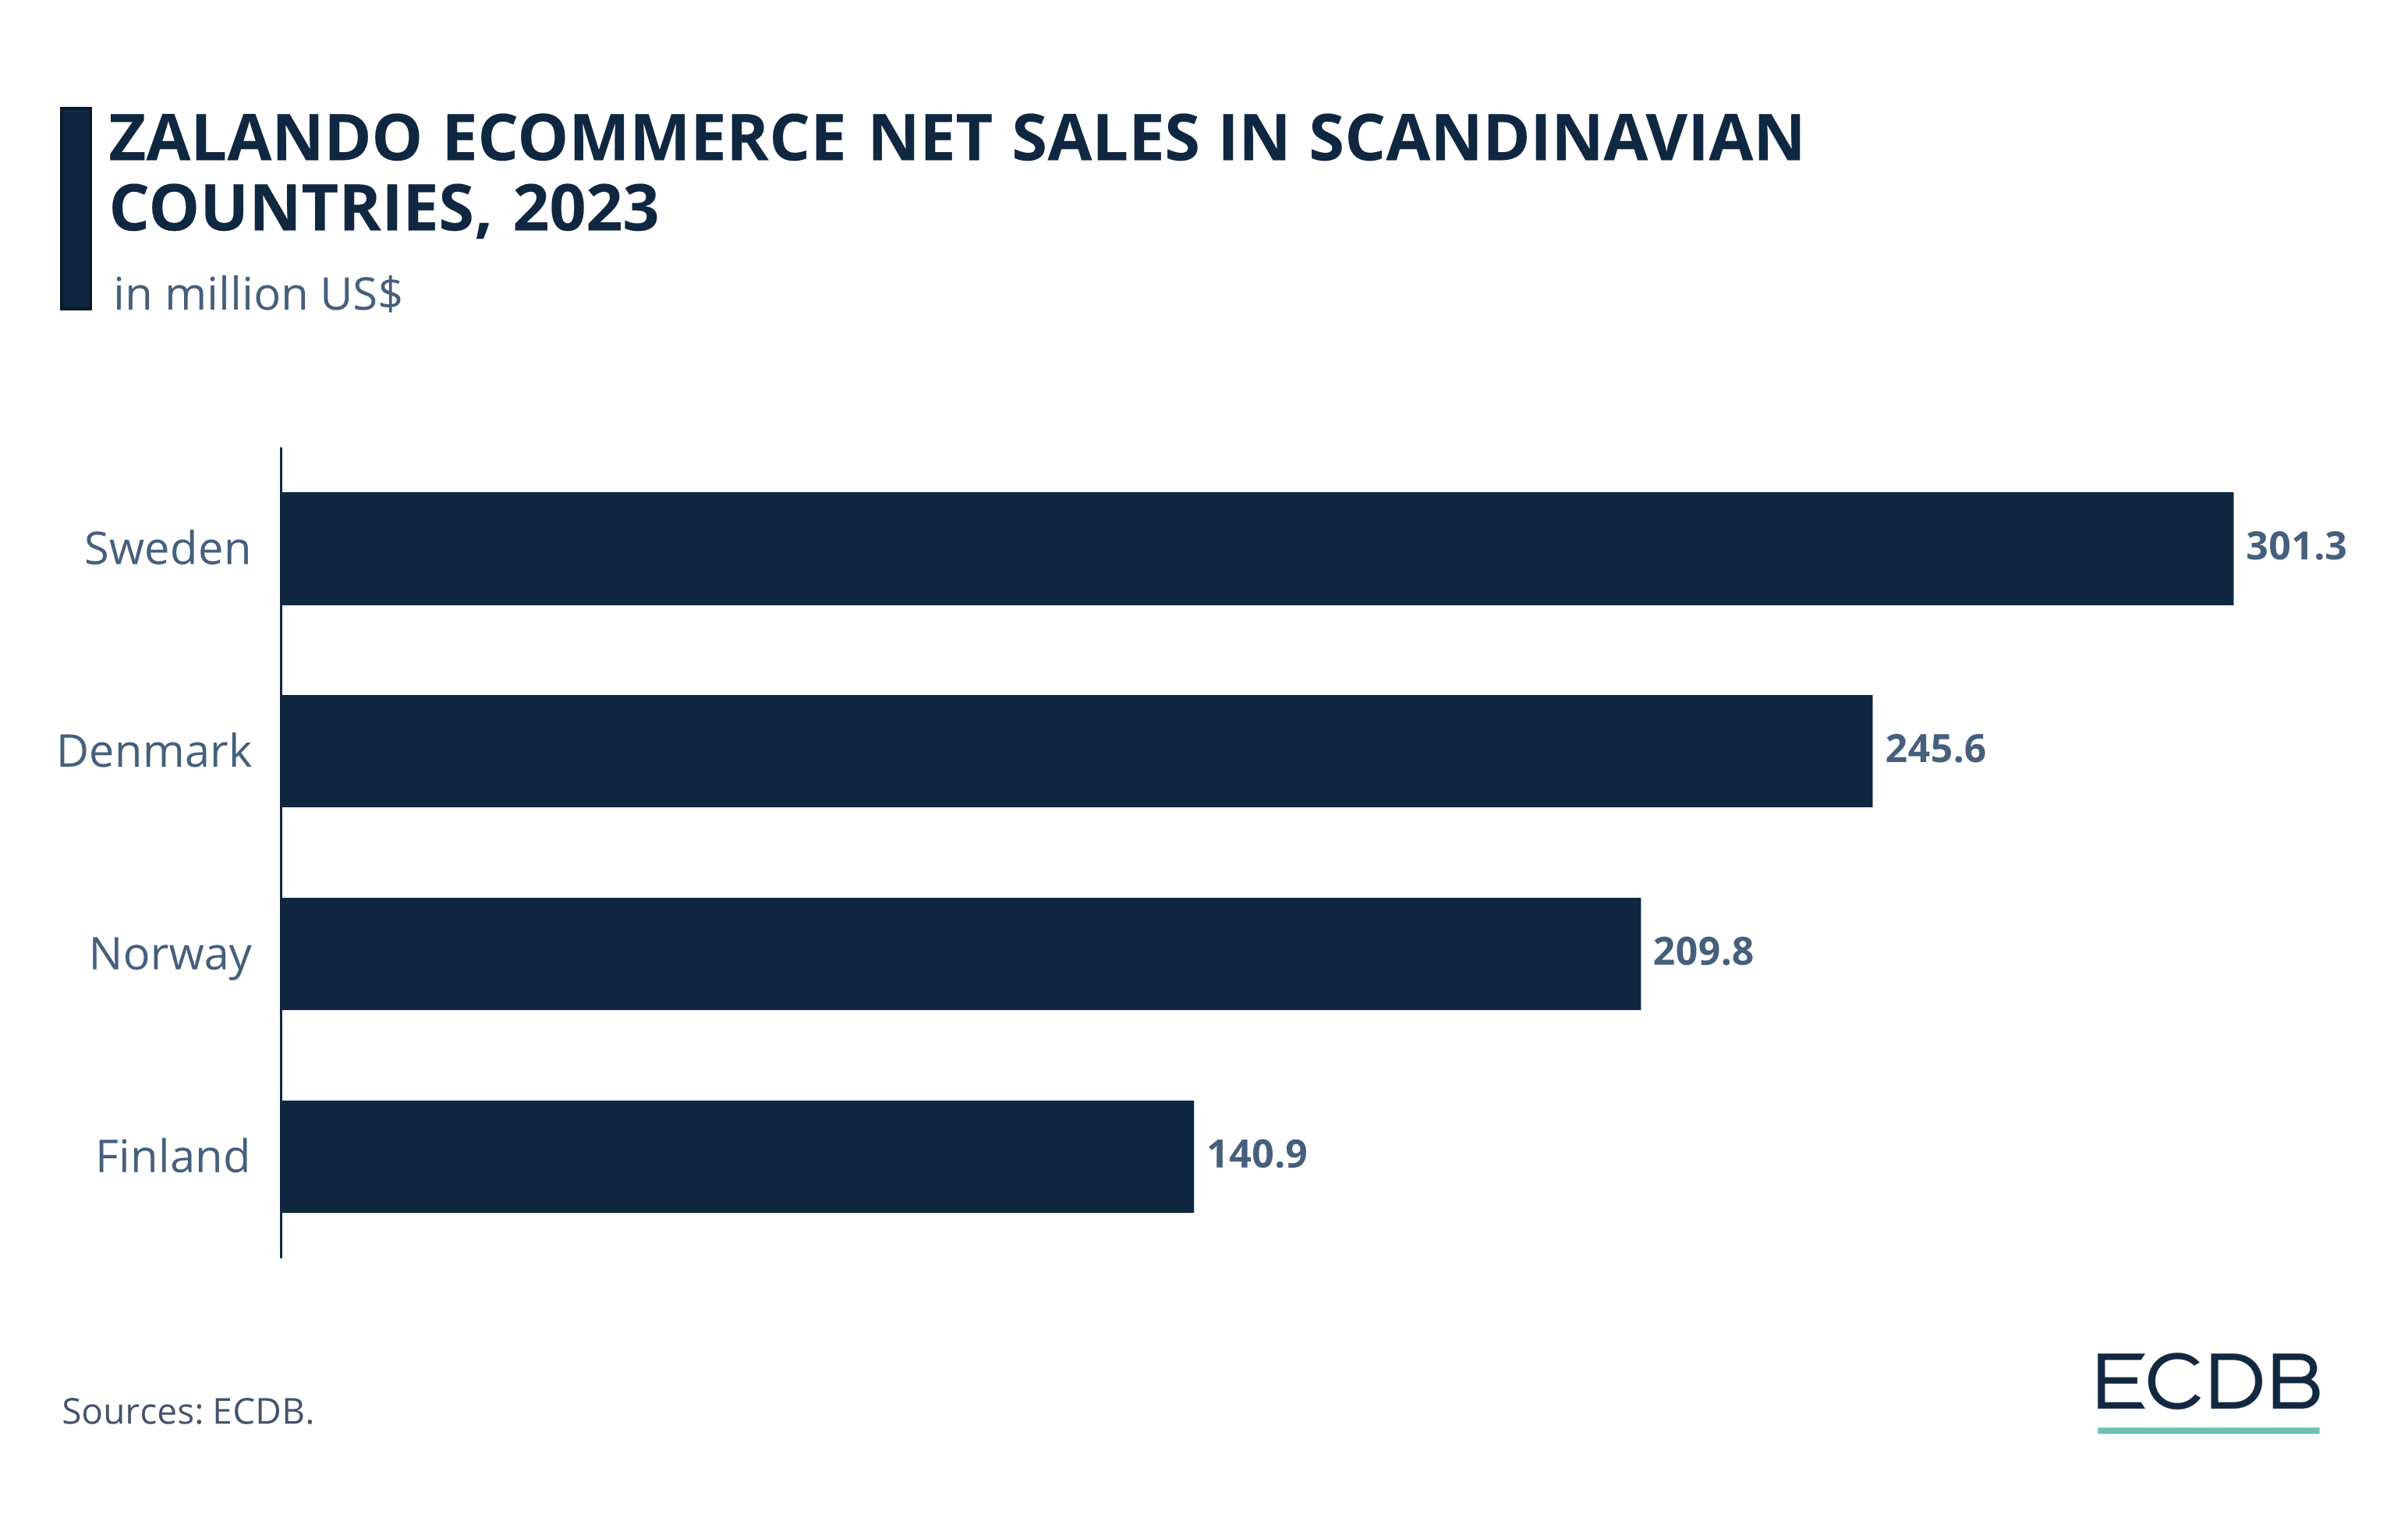 Zalando eCommerce Net Sales in Scandinavian Countries, 2023